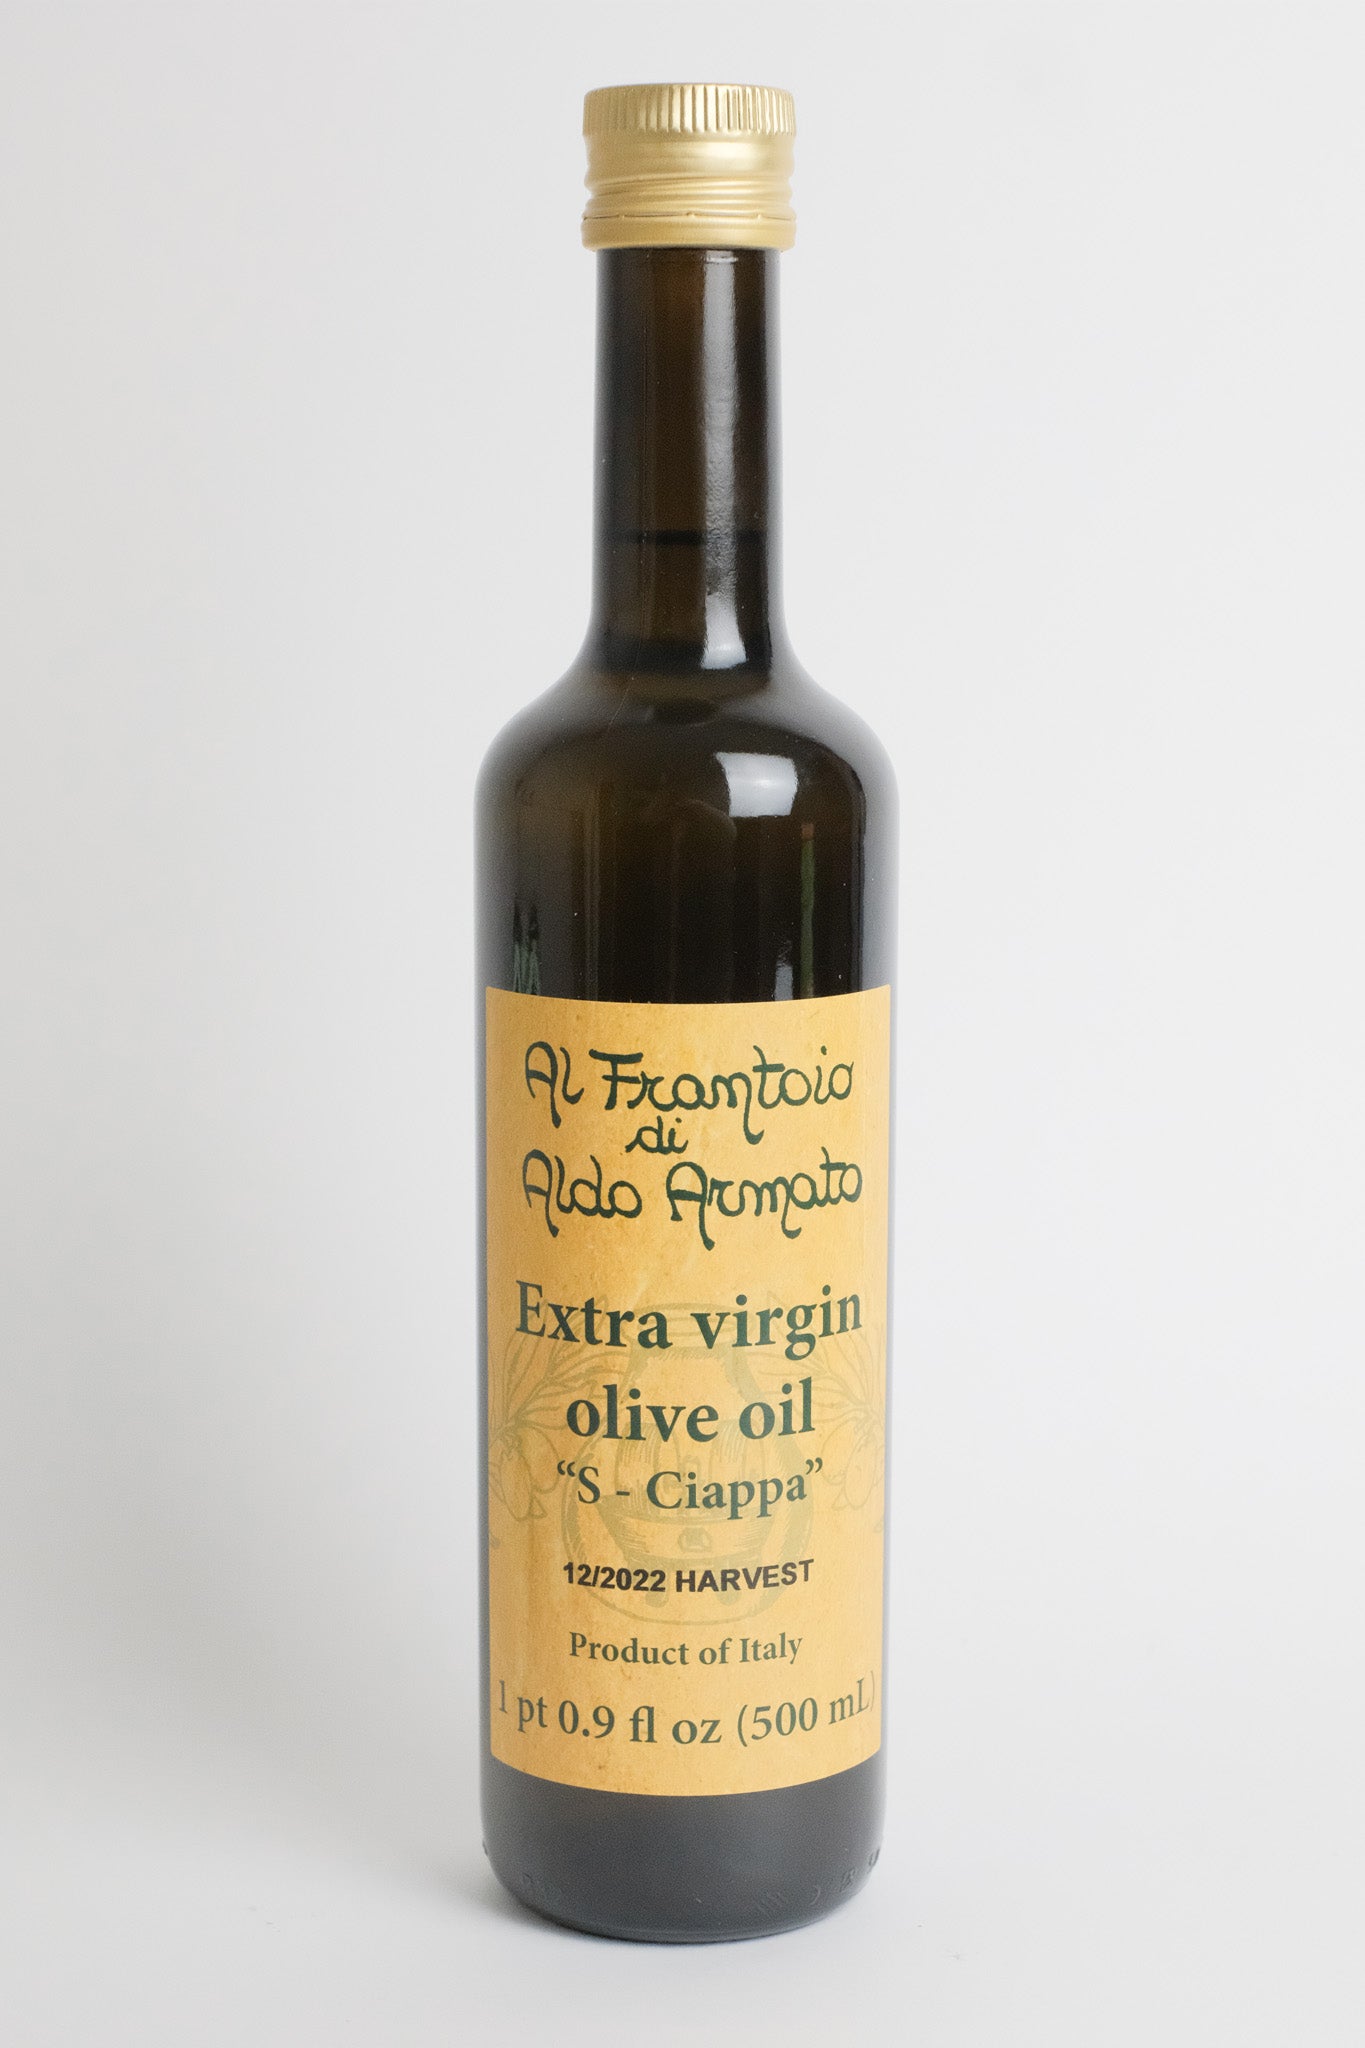 Al Frantoio di Aldo Armato "S-Ciappa" Olive oil - 2022 harvest / 500ml